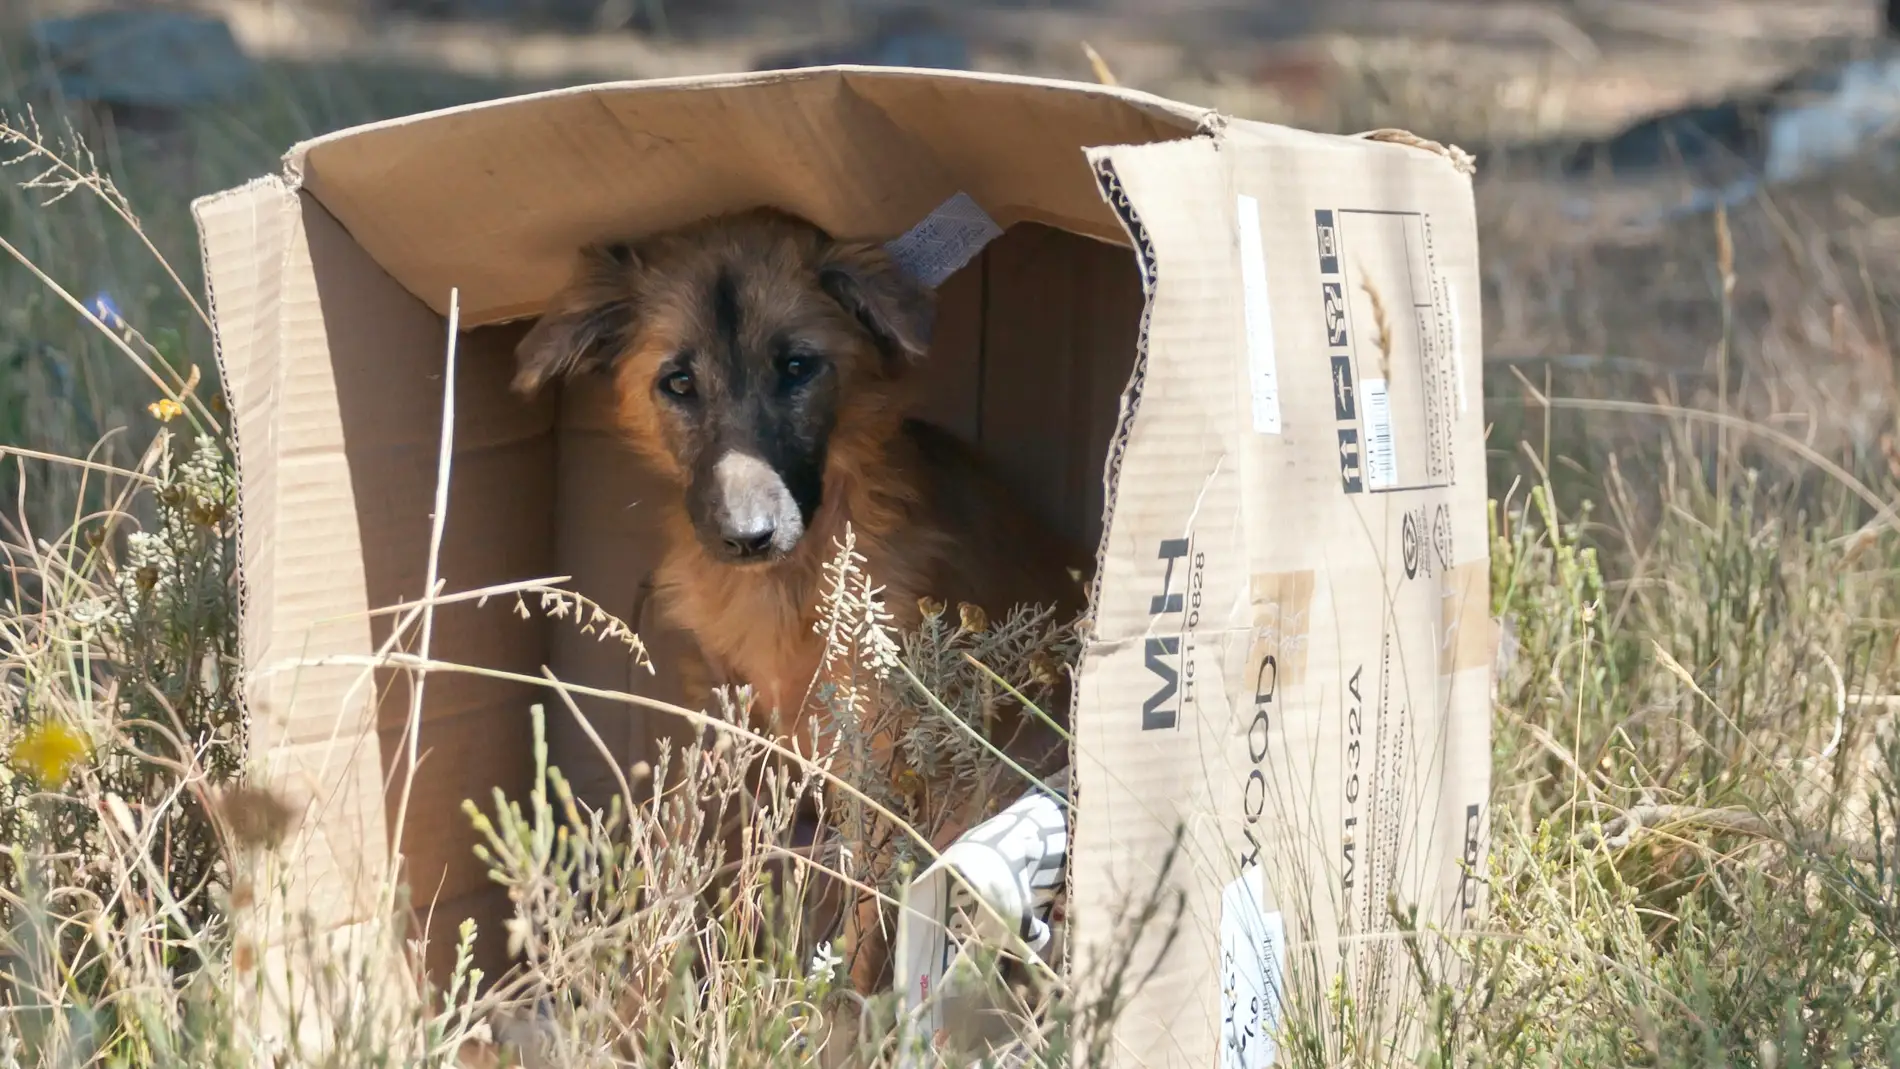 Perro abandonado dentro de una caja en un descampado